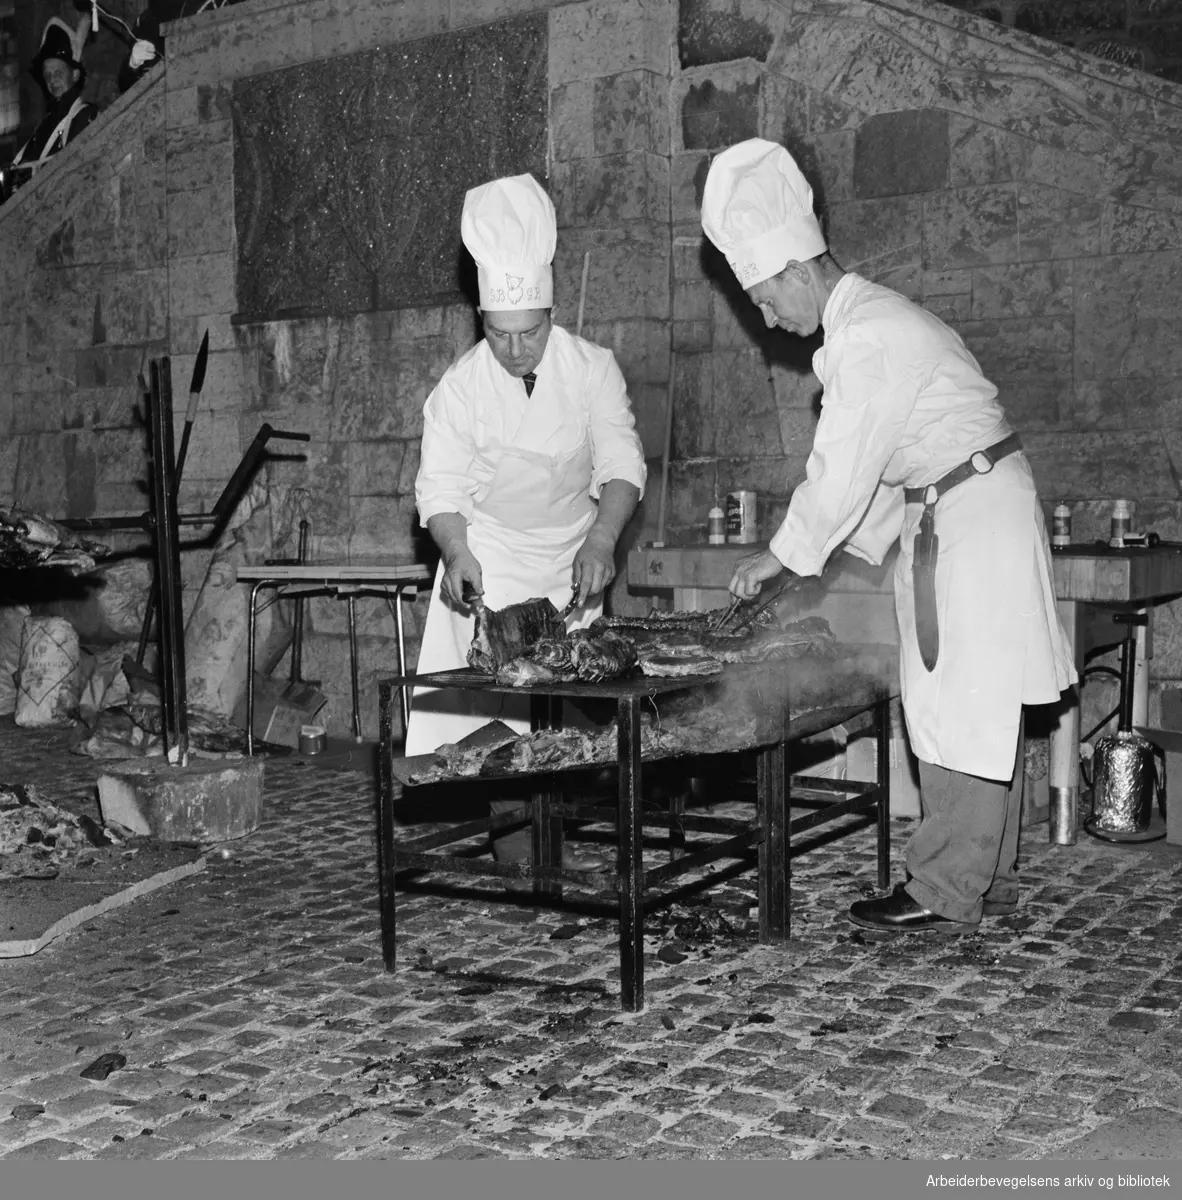 Foreningen Akershus Slotts venner markerer 10 års-jubileum med festmiddag i slottssalen. Kokkene Bruno Gjerdrum (t.v.) og Gunnar Bjerke tilbereder maten i borggården. 27. September 1961.